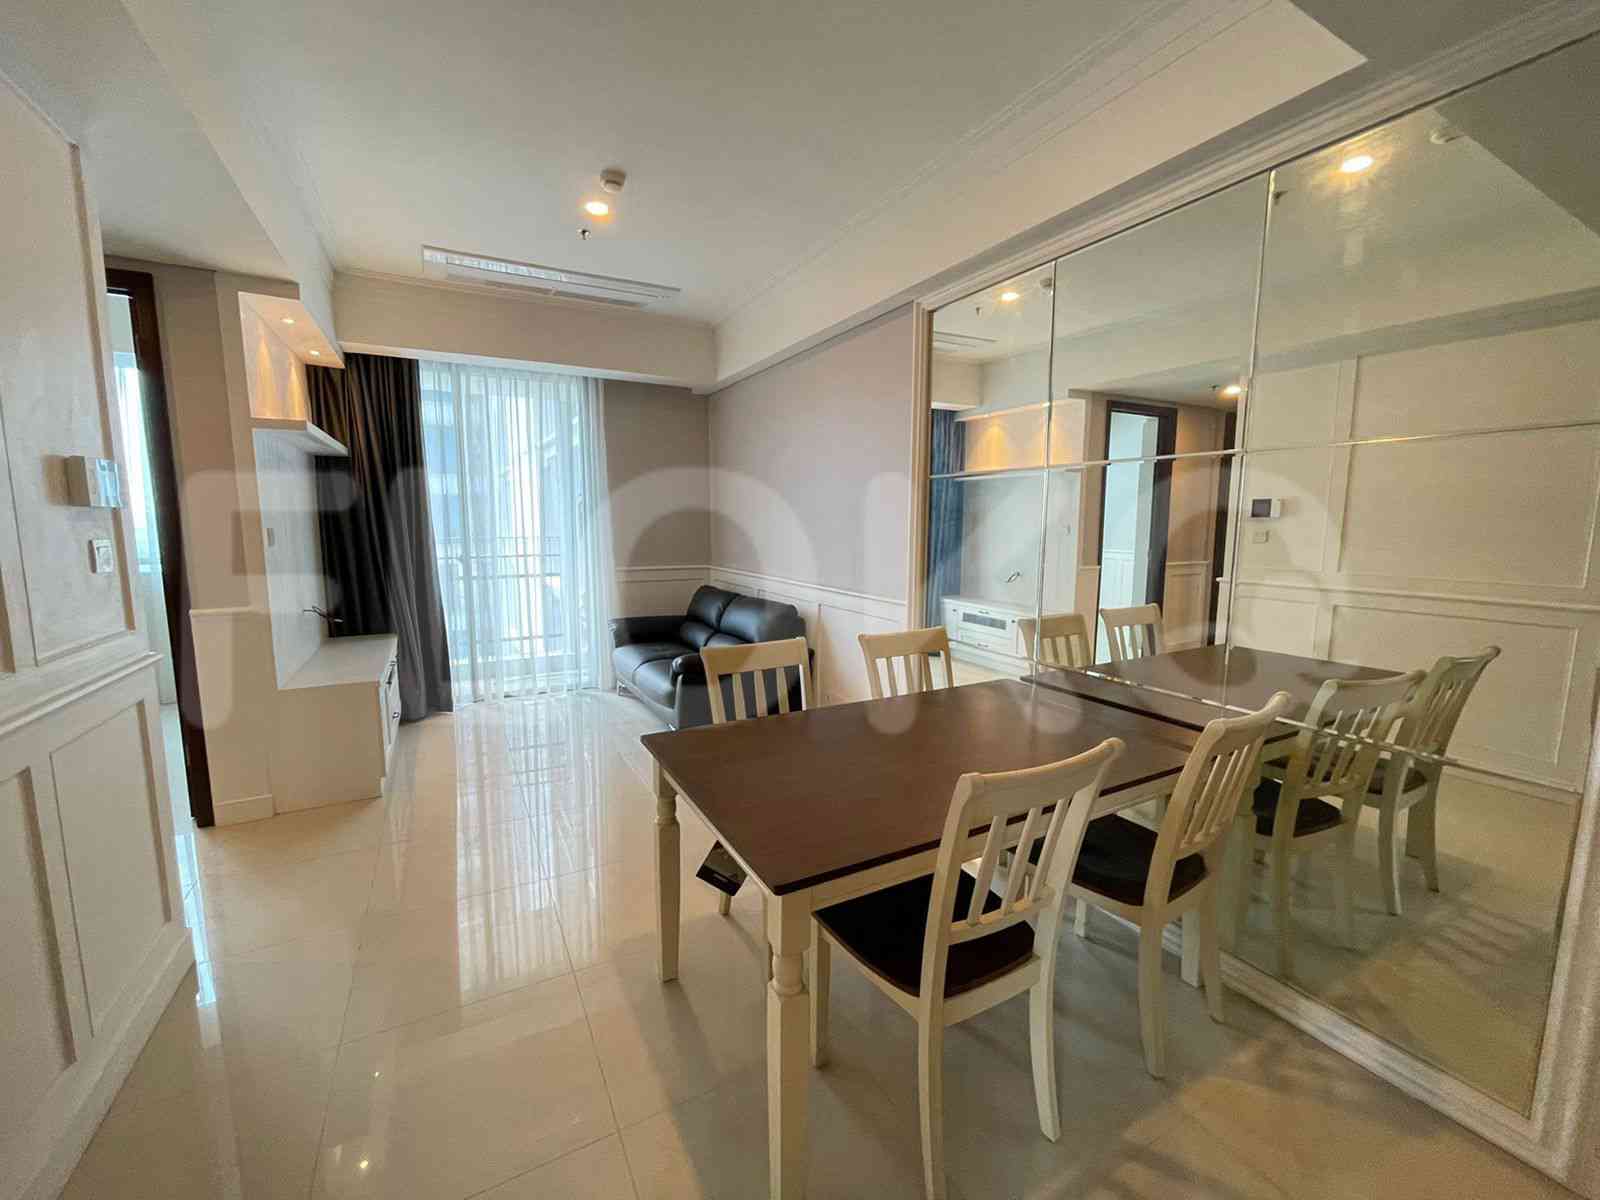 2 Bedroom on 11th Floor for Rent in Casa Grande - fte0b9 2